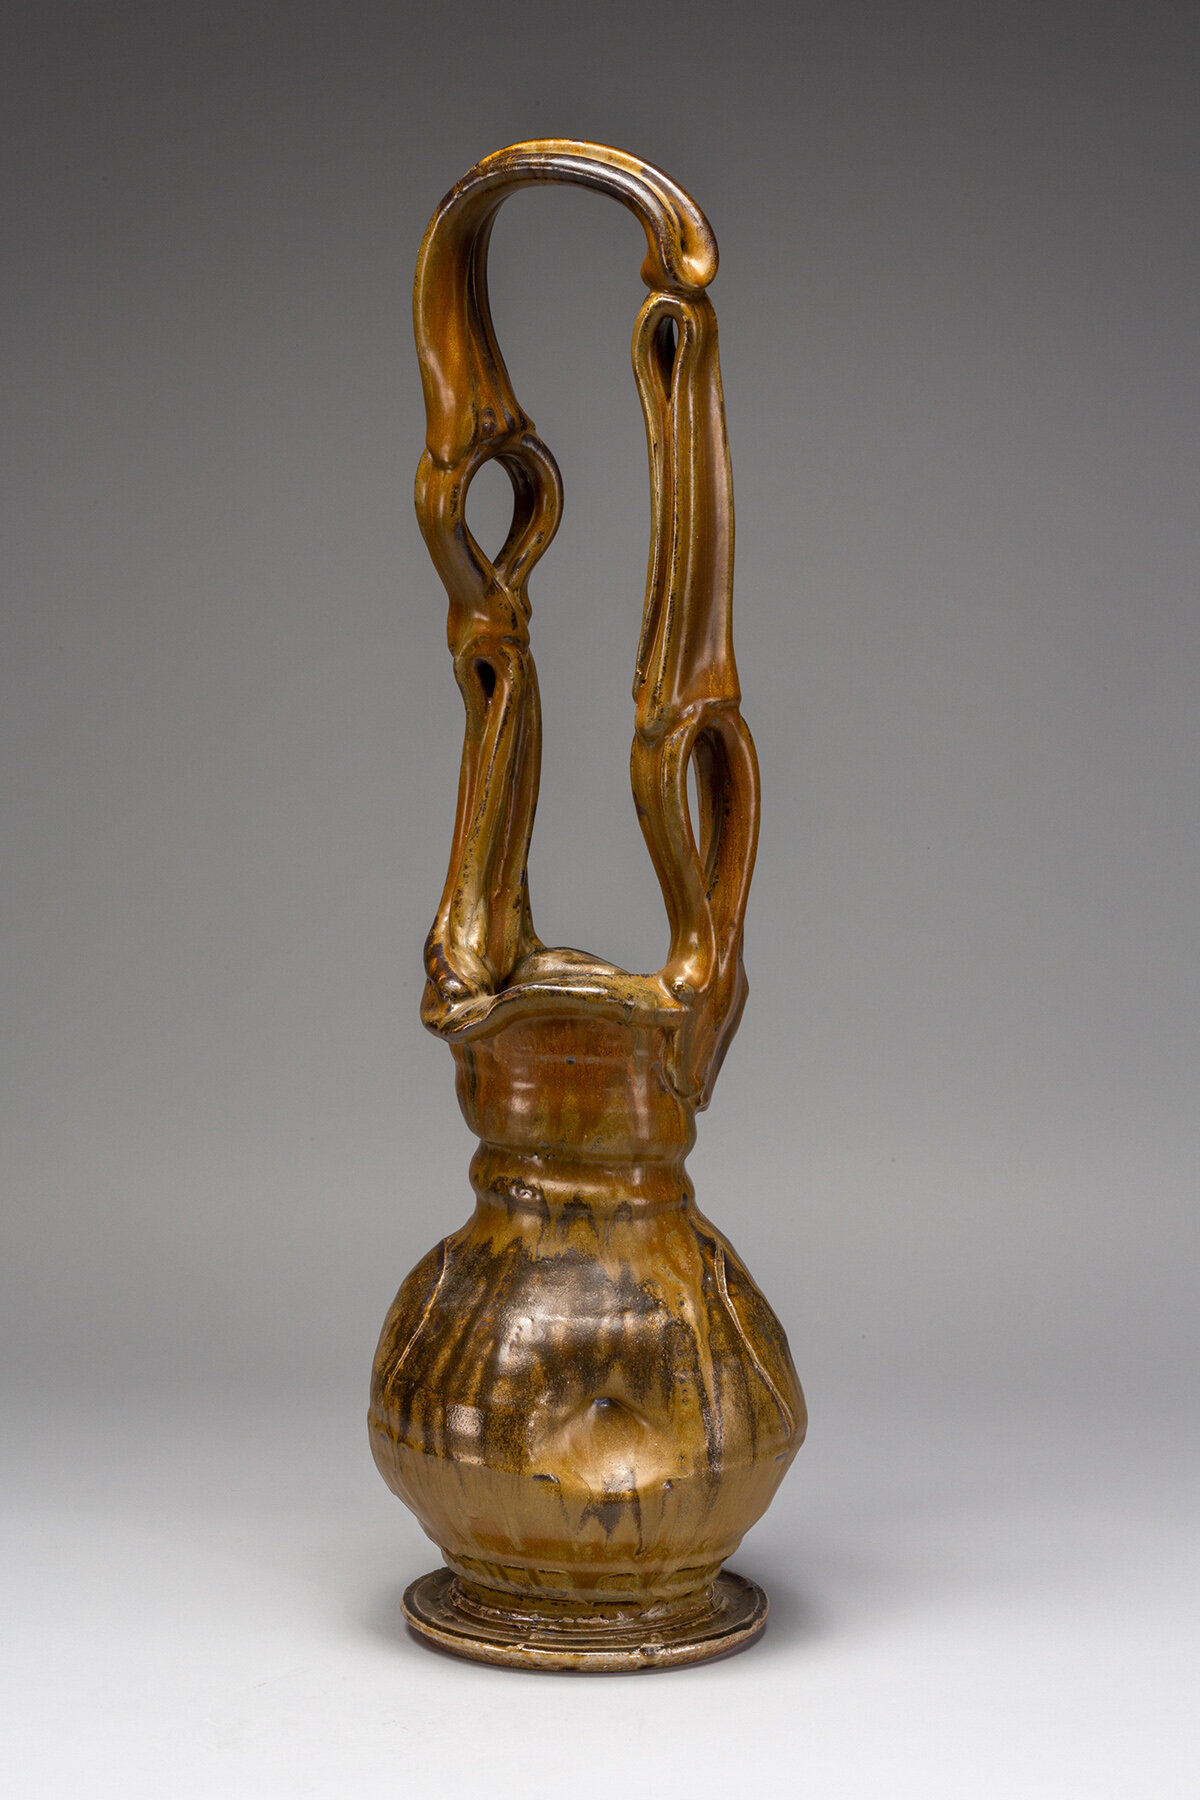  Josh DeWeese (American, b.&nbsp;1963), Vase with Tall Loop Handle, 2016, Stoneware, 25 in., © Josh DeWeese 